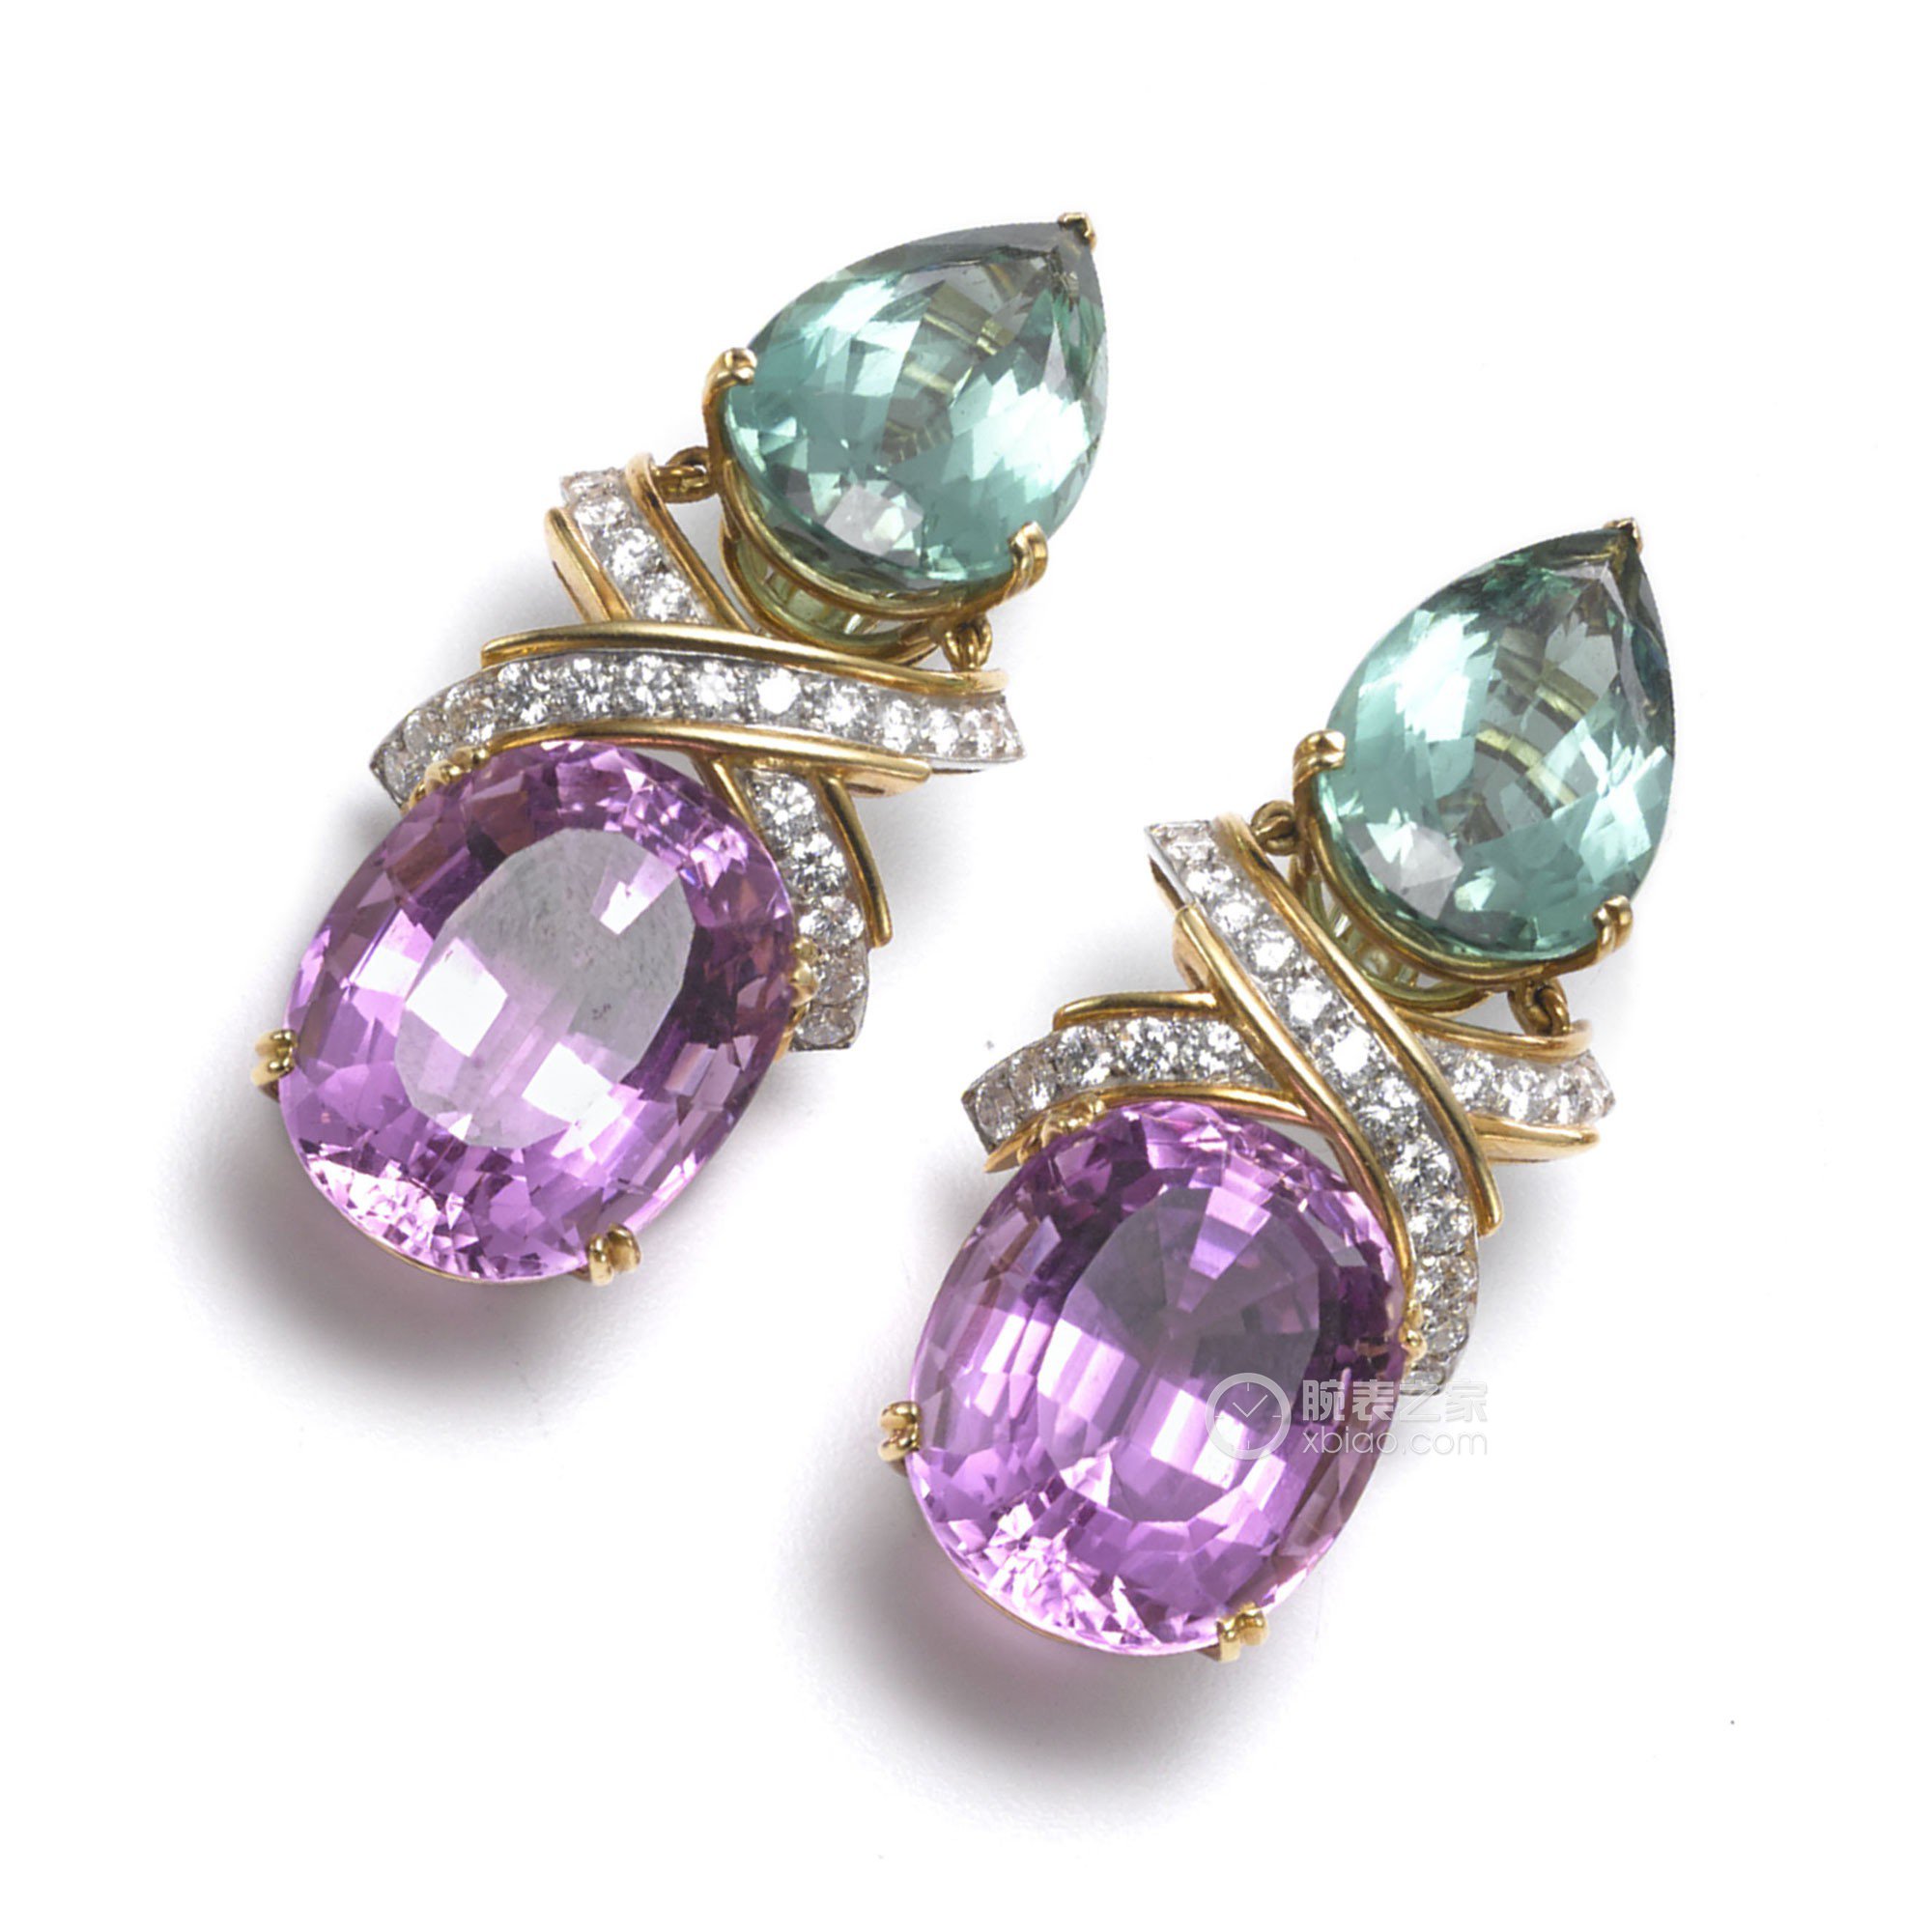 史上最贵紫粉钻1.8亿元拍出！盘点那些珍贵罕见的彩色钻石 – 我爱钻石网官网